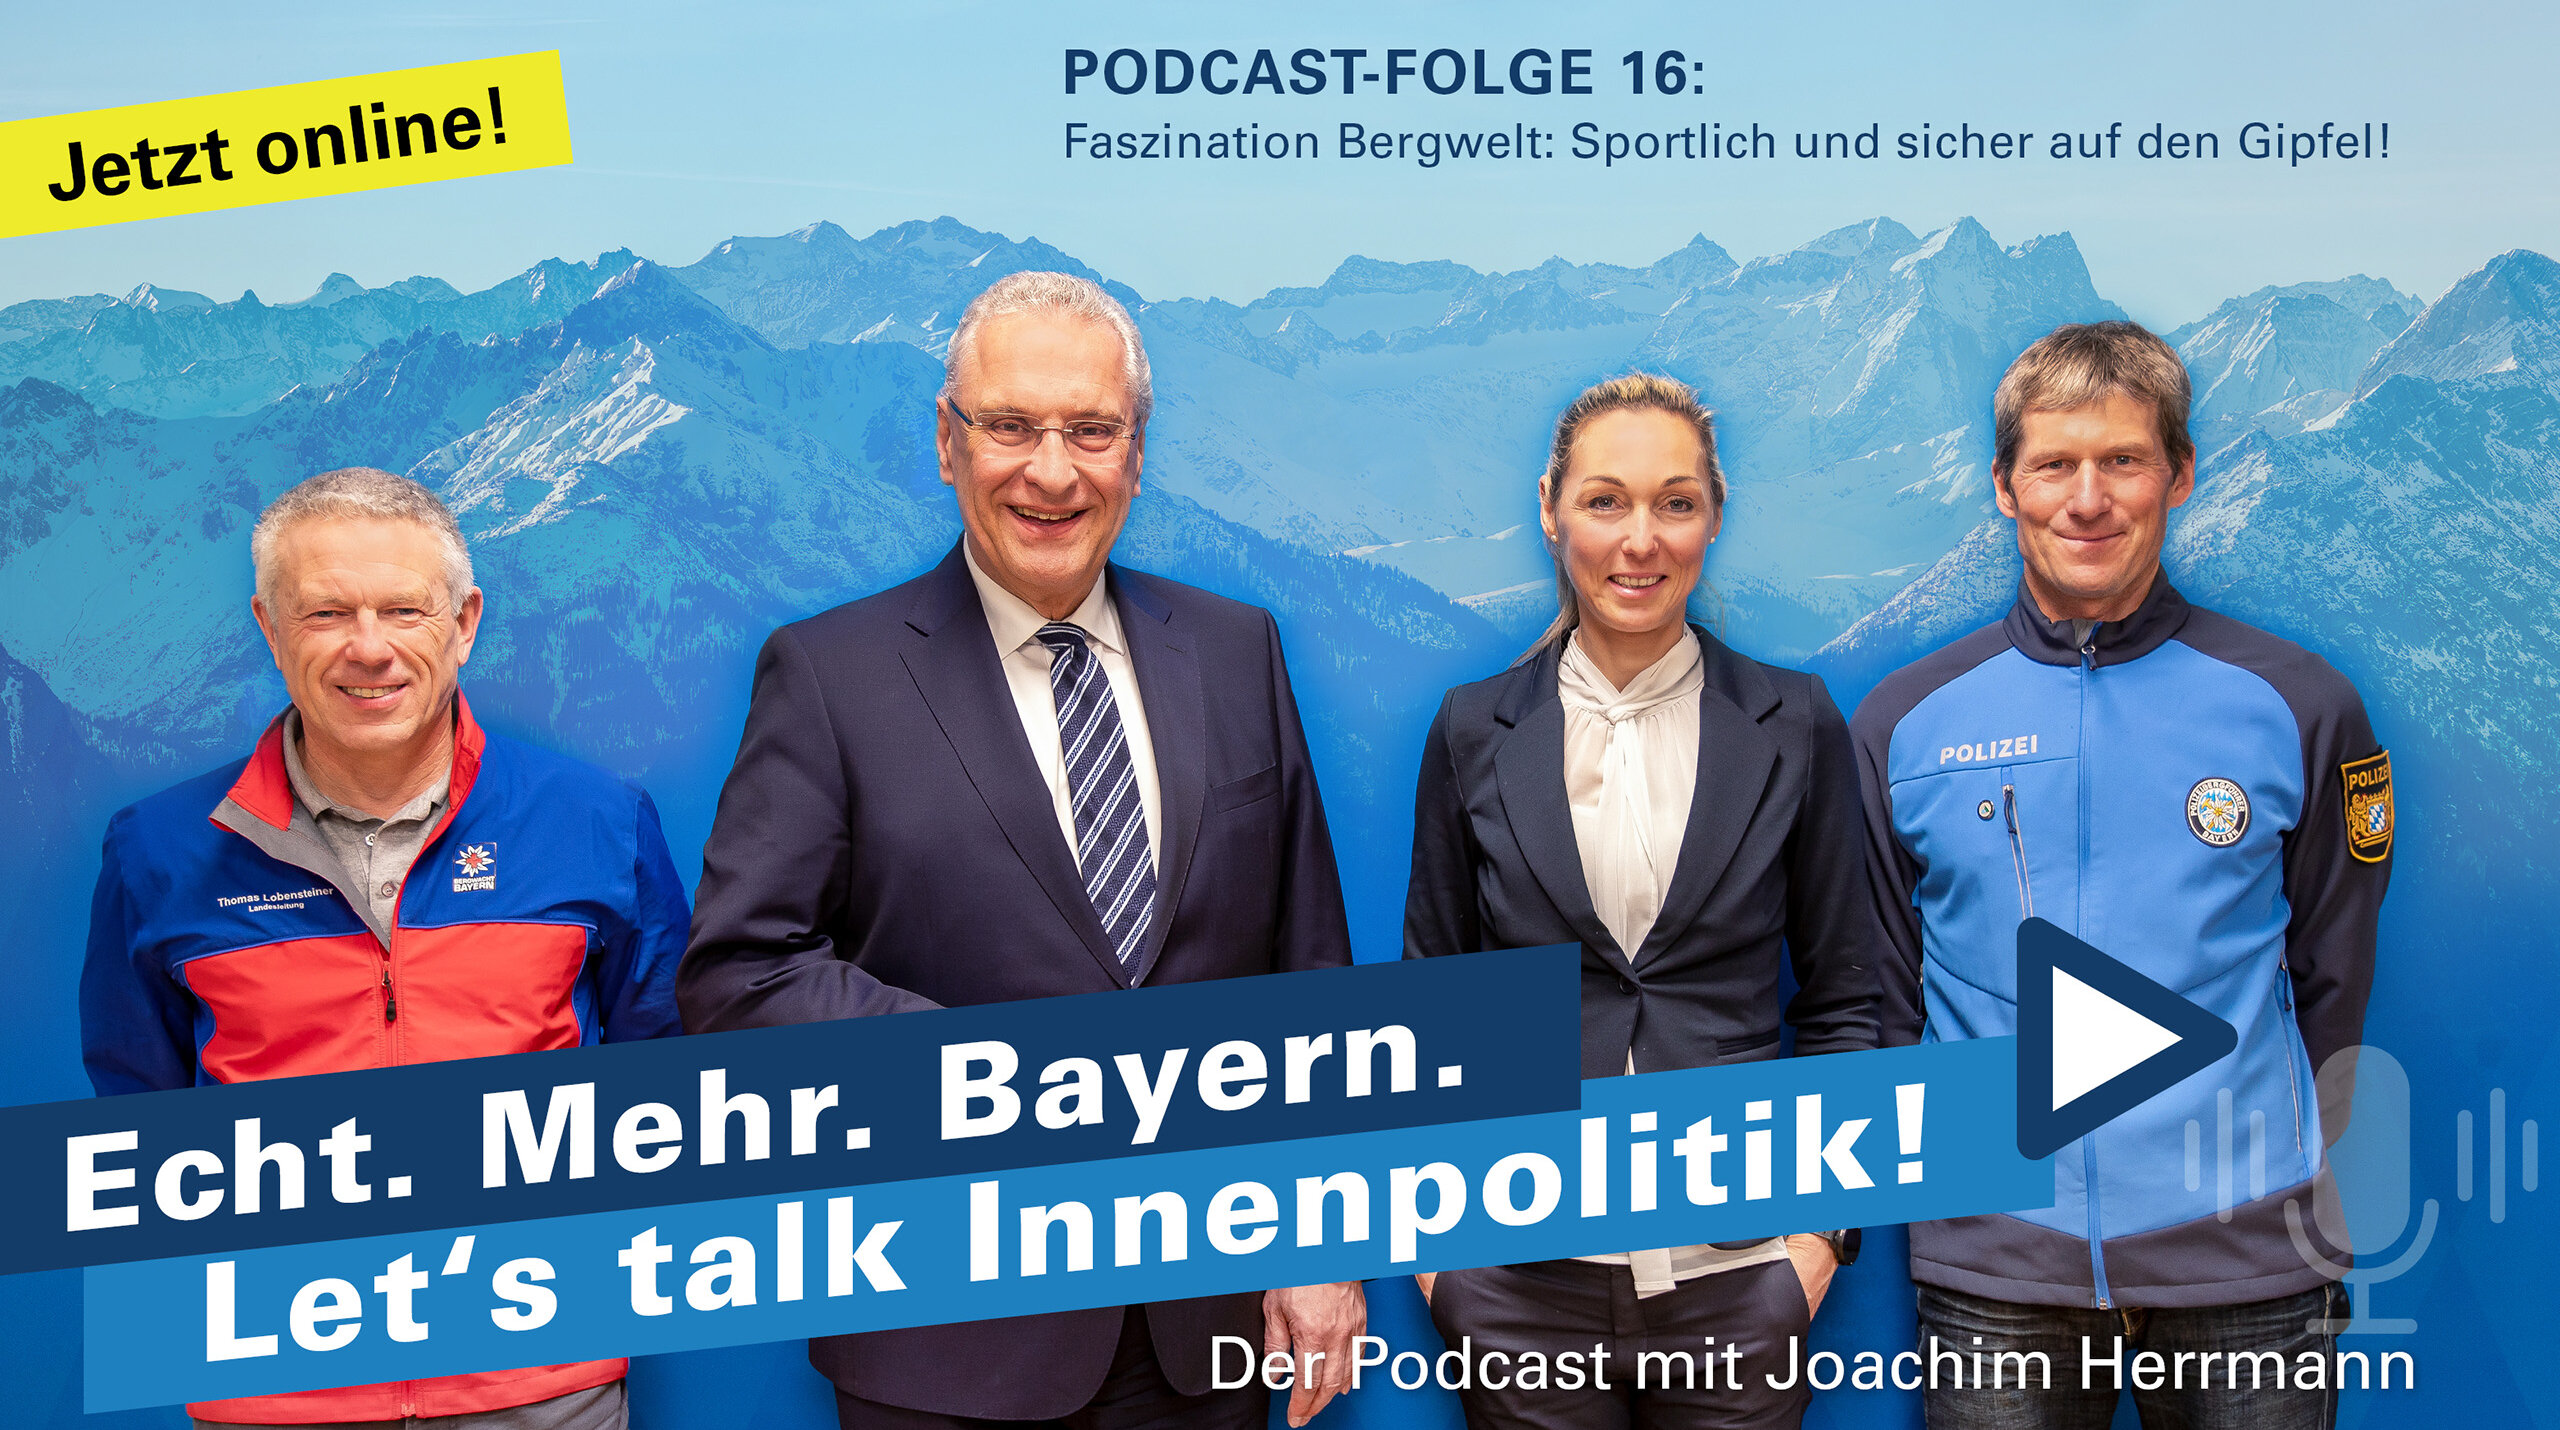 Jetzt online: Podcast-Folge 16: Faszination Bergwelt: Sportlich und sicher auf den Gipfel! Im Bild: Thomas Lobensteiner, Joachim Herrmann, Eva Sperger und Helmut Weidel